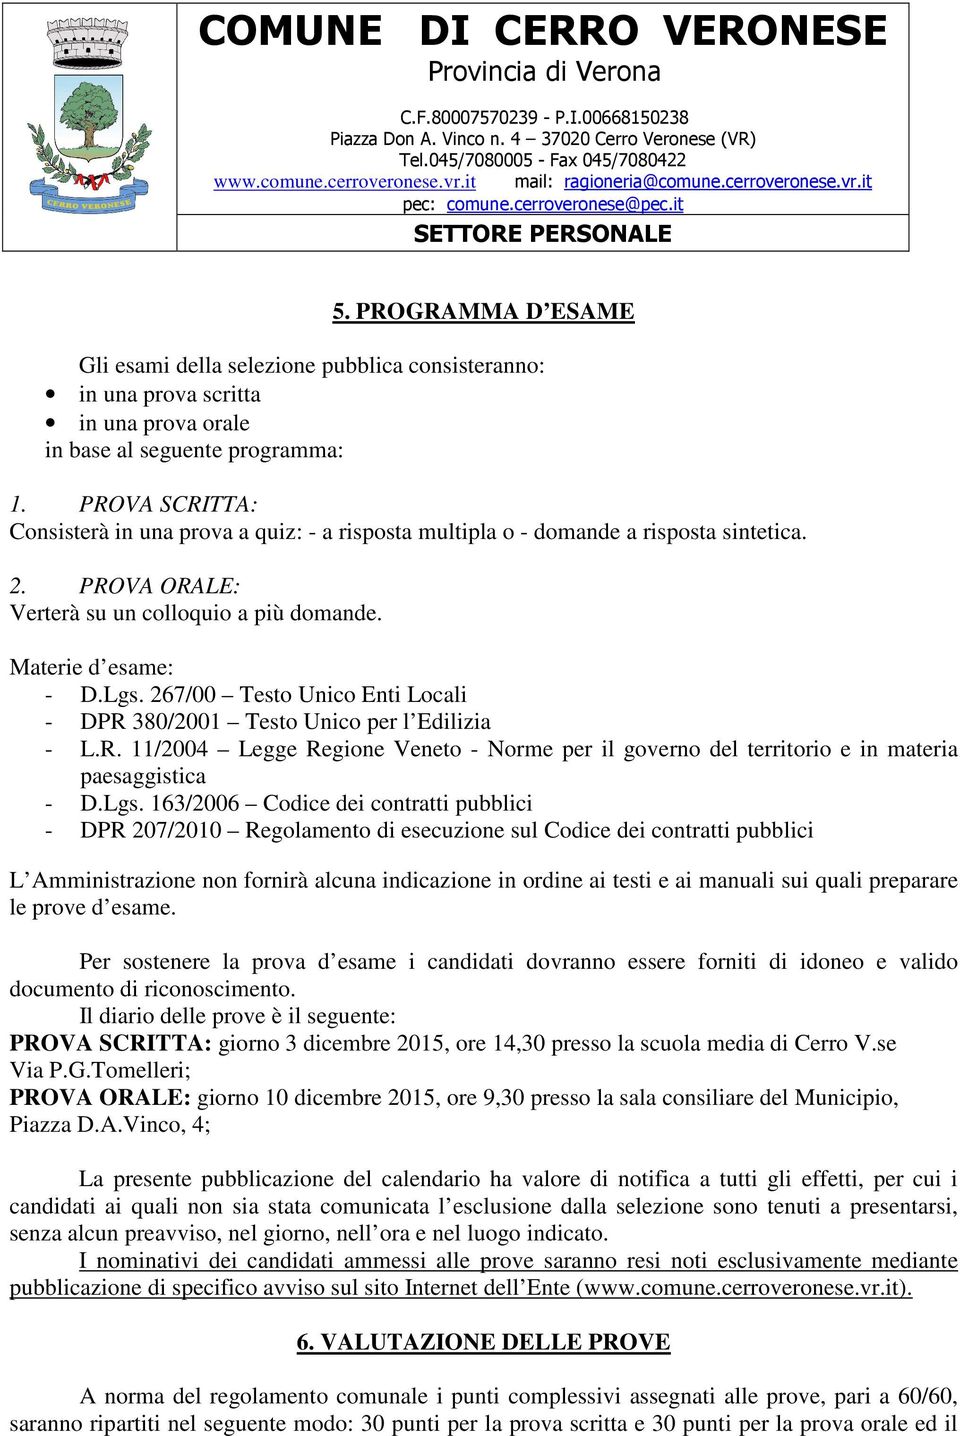 267/00 Testo Unico Enti Locali - DPR 380/2001 Testo Unico per l Edilizia - L.R. 11/2004 Legge Regione Veneto - Norme per il governo del territorio e in materia paesaggistica - D.Lgs.